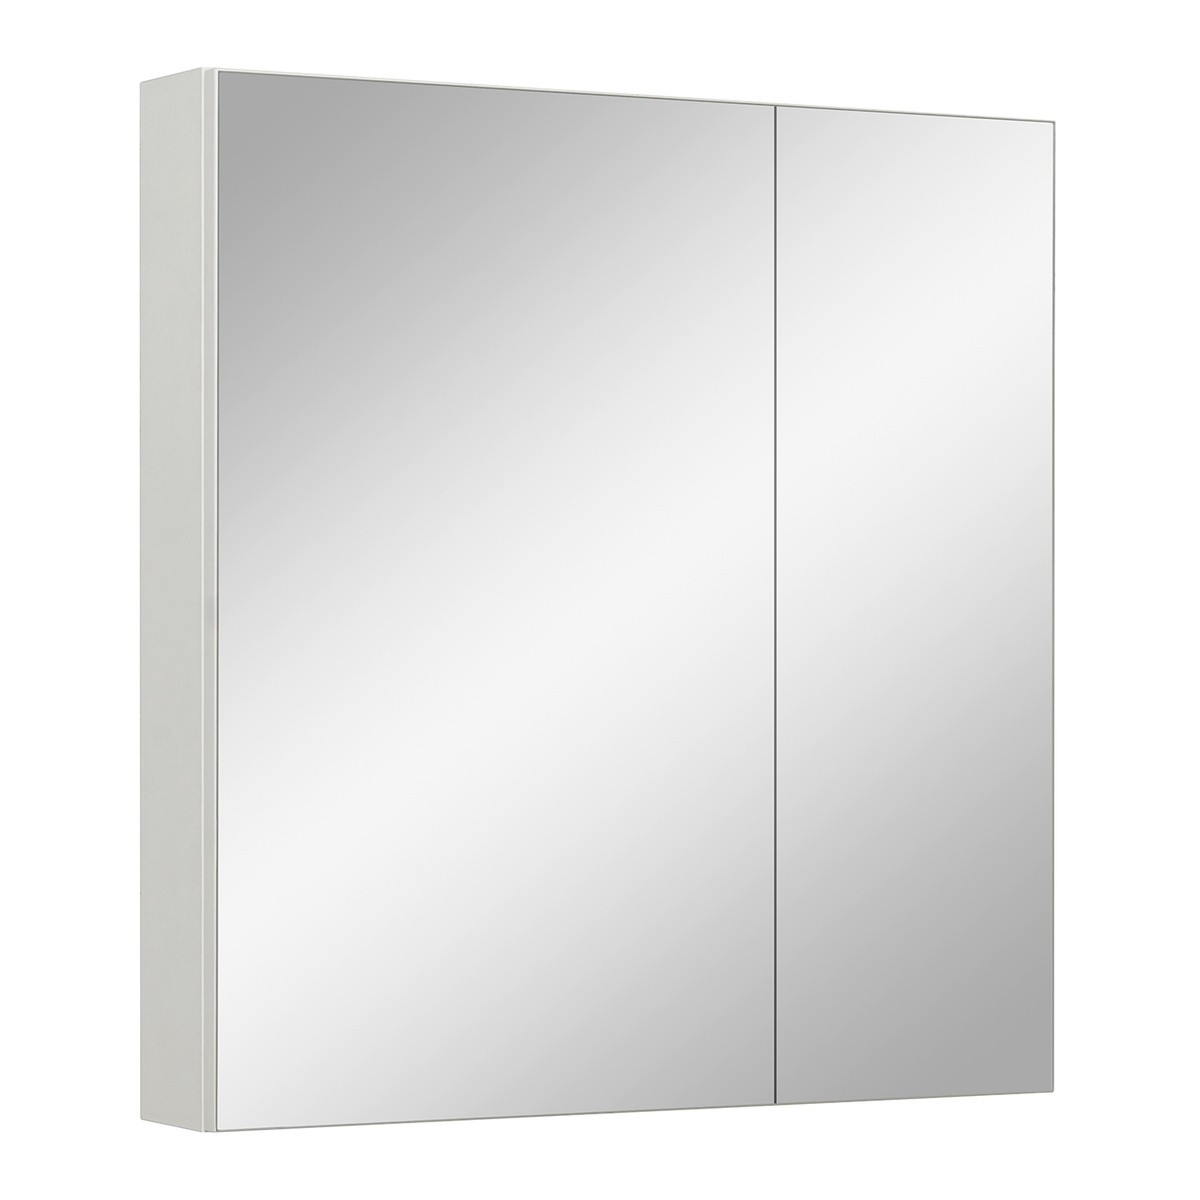 Зеркало шкаф для ванной, Runo, Лада 60, белый, полка для ванной